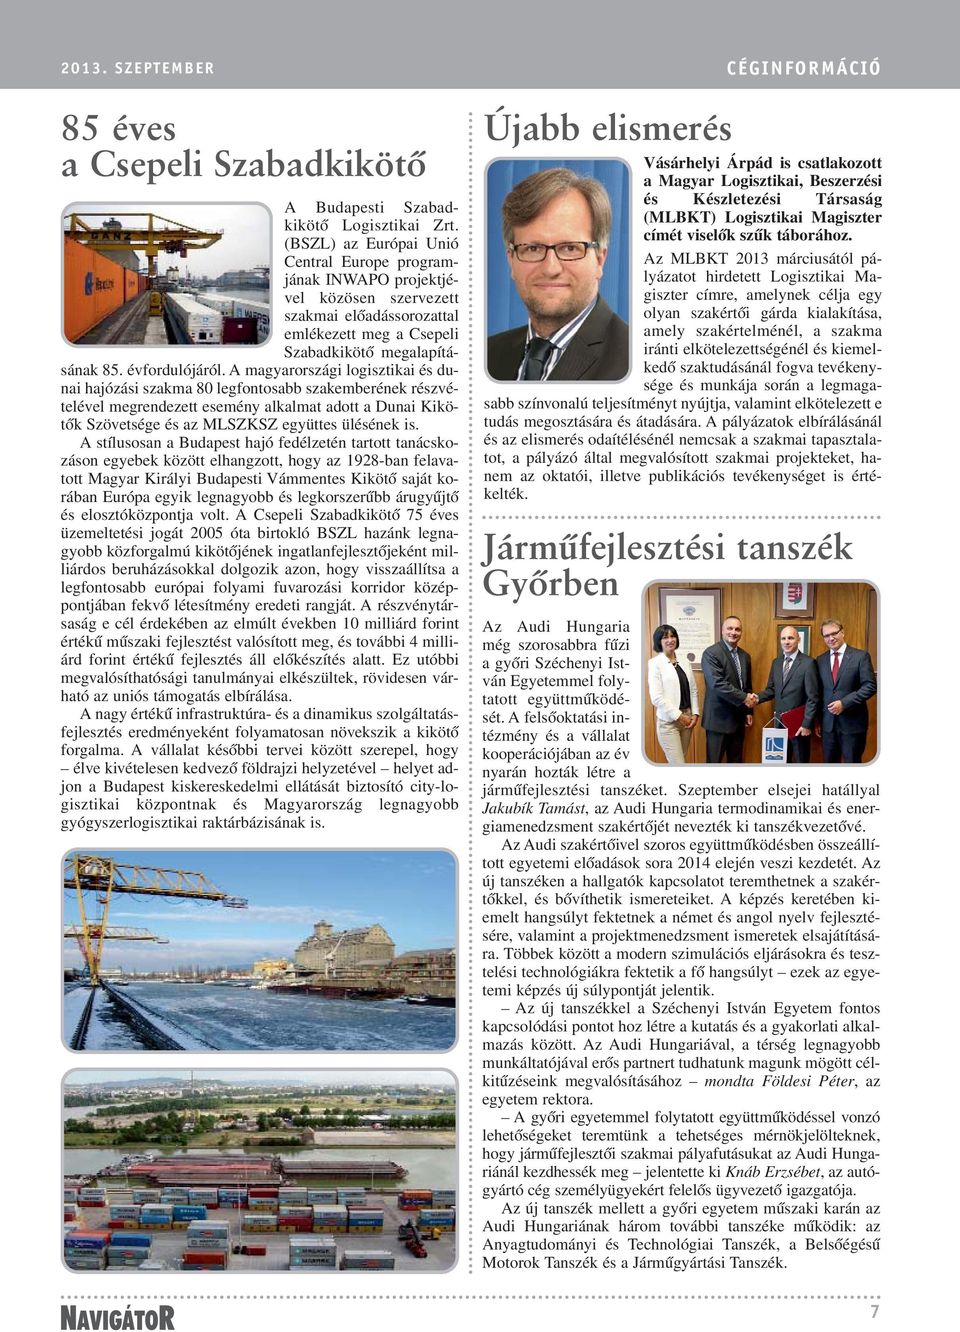 A magyarországi logisztikai és dunai hajózási szakma 80 legfontosabb szakemberének részvételével megrendezett esemény alkalmat adott a Dunai Kikötõk Szövetsége és az MLSZKSZ együttes ülésének is.